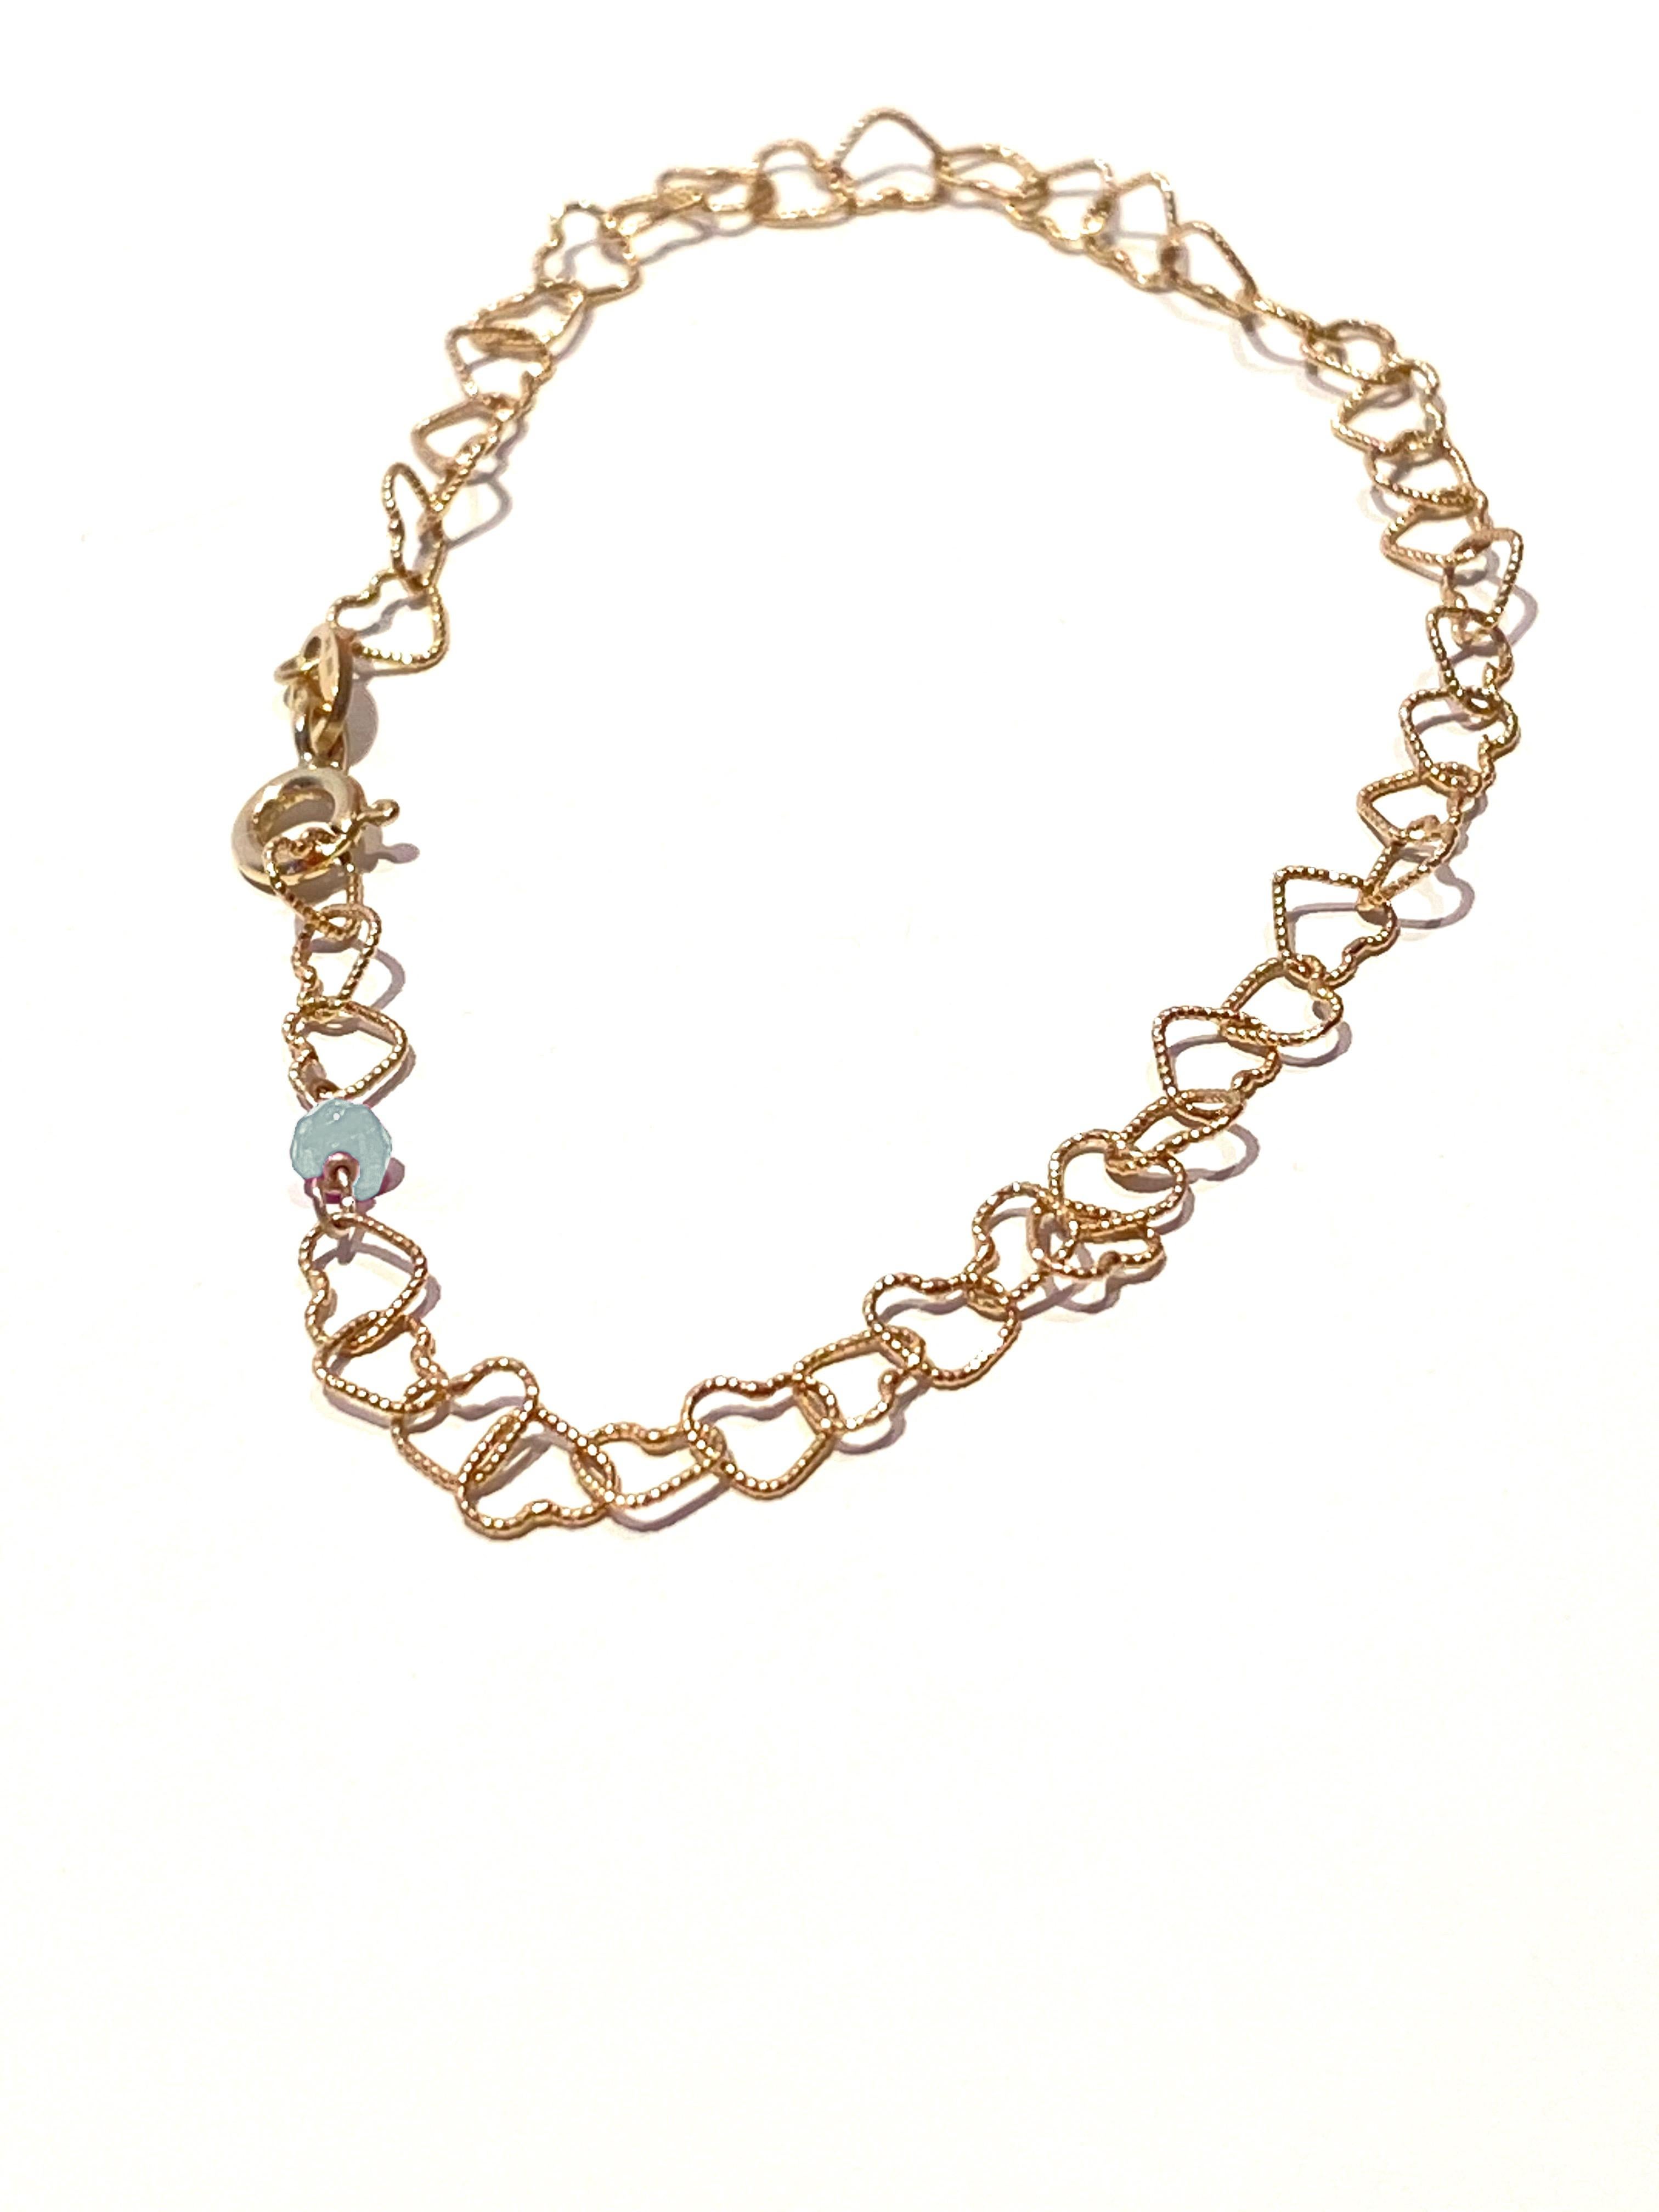 0,35 Karat Perlenschliff Aquamarin 18 Karat Gelbgold Herzkette Armband  für Damen oder Herren im Angebot